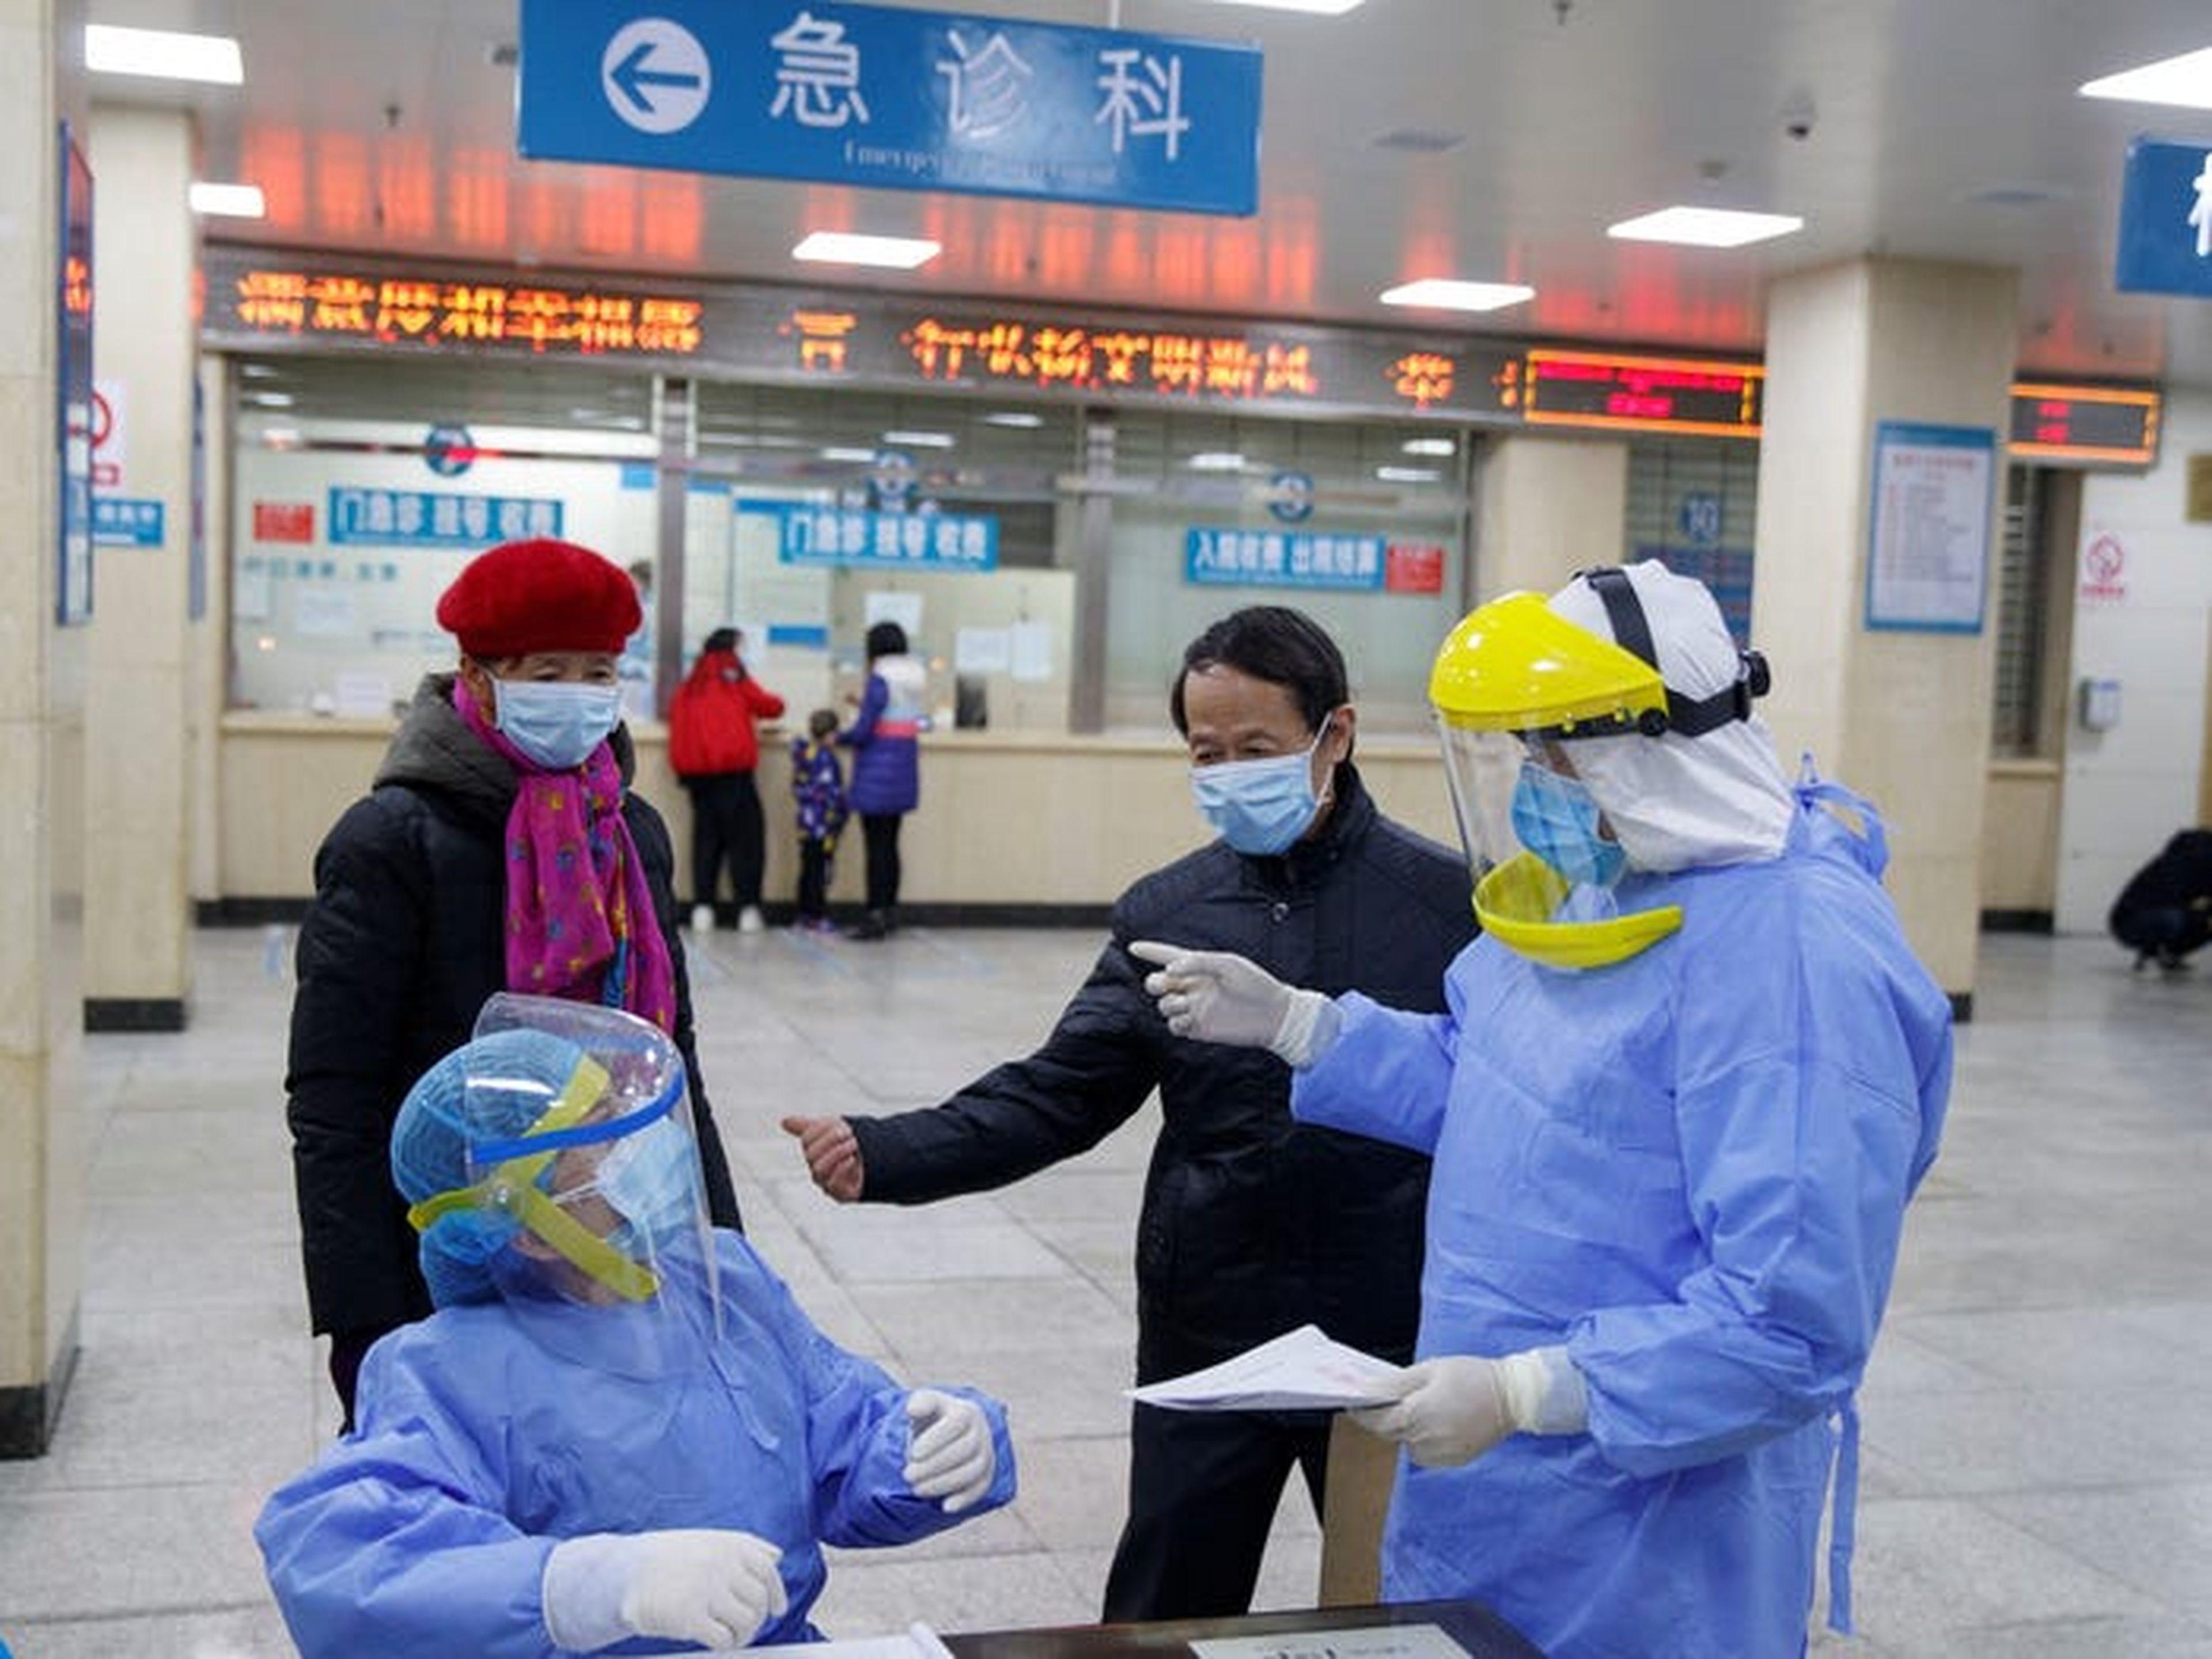 Las enfermeras con equipo de protección hablan con las personas en el área de recepción del First People's Hospital en Yueyang, provincia de Hunan, China, 28 de enero de 2020.